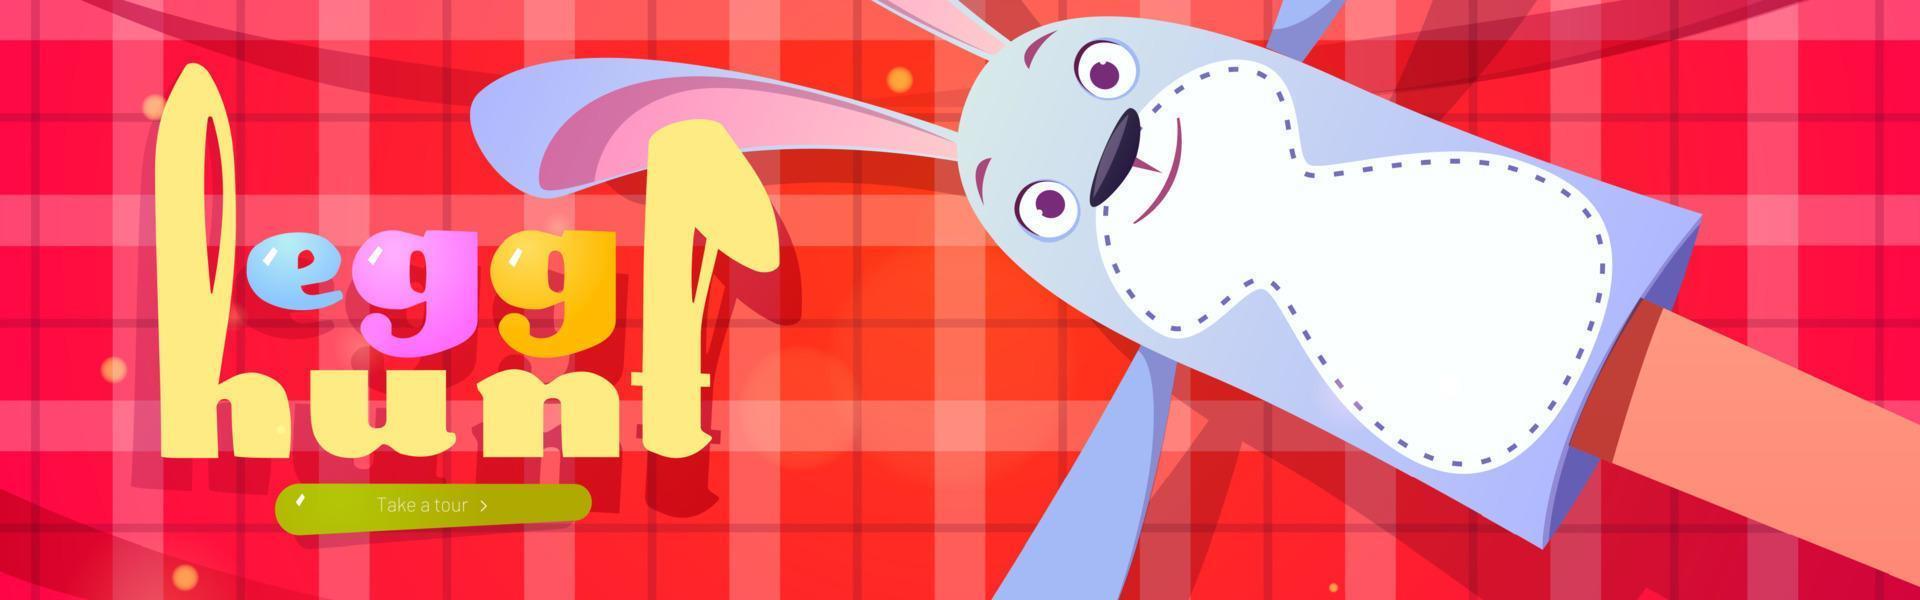 eiersuche-cartoon-webbanner mit lustigem kaninchenspielzeug vektor